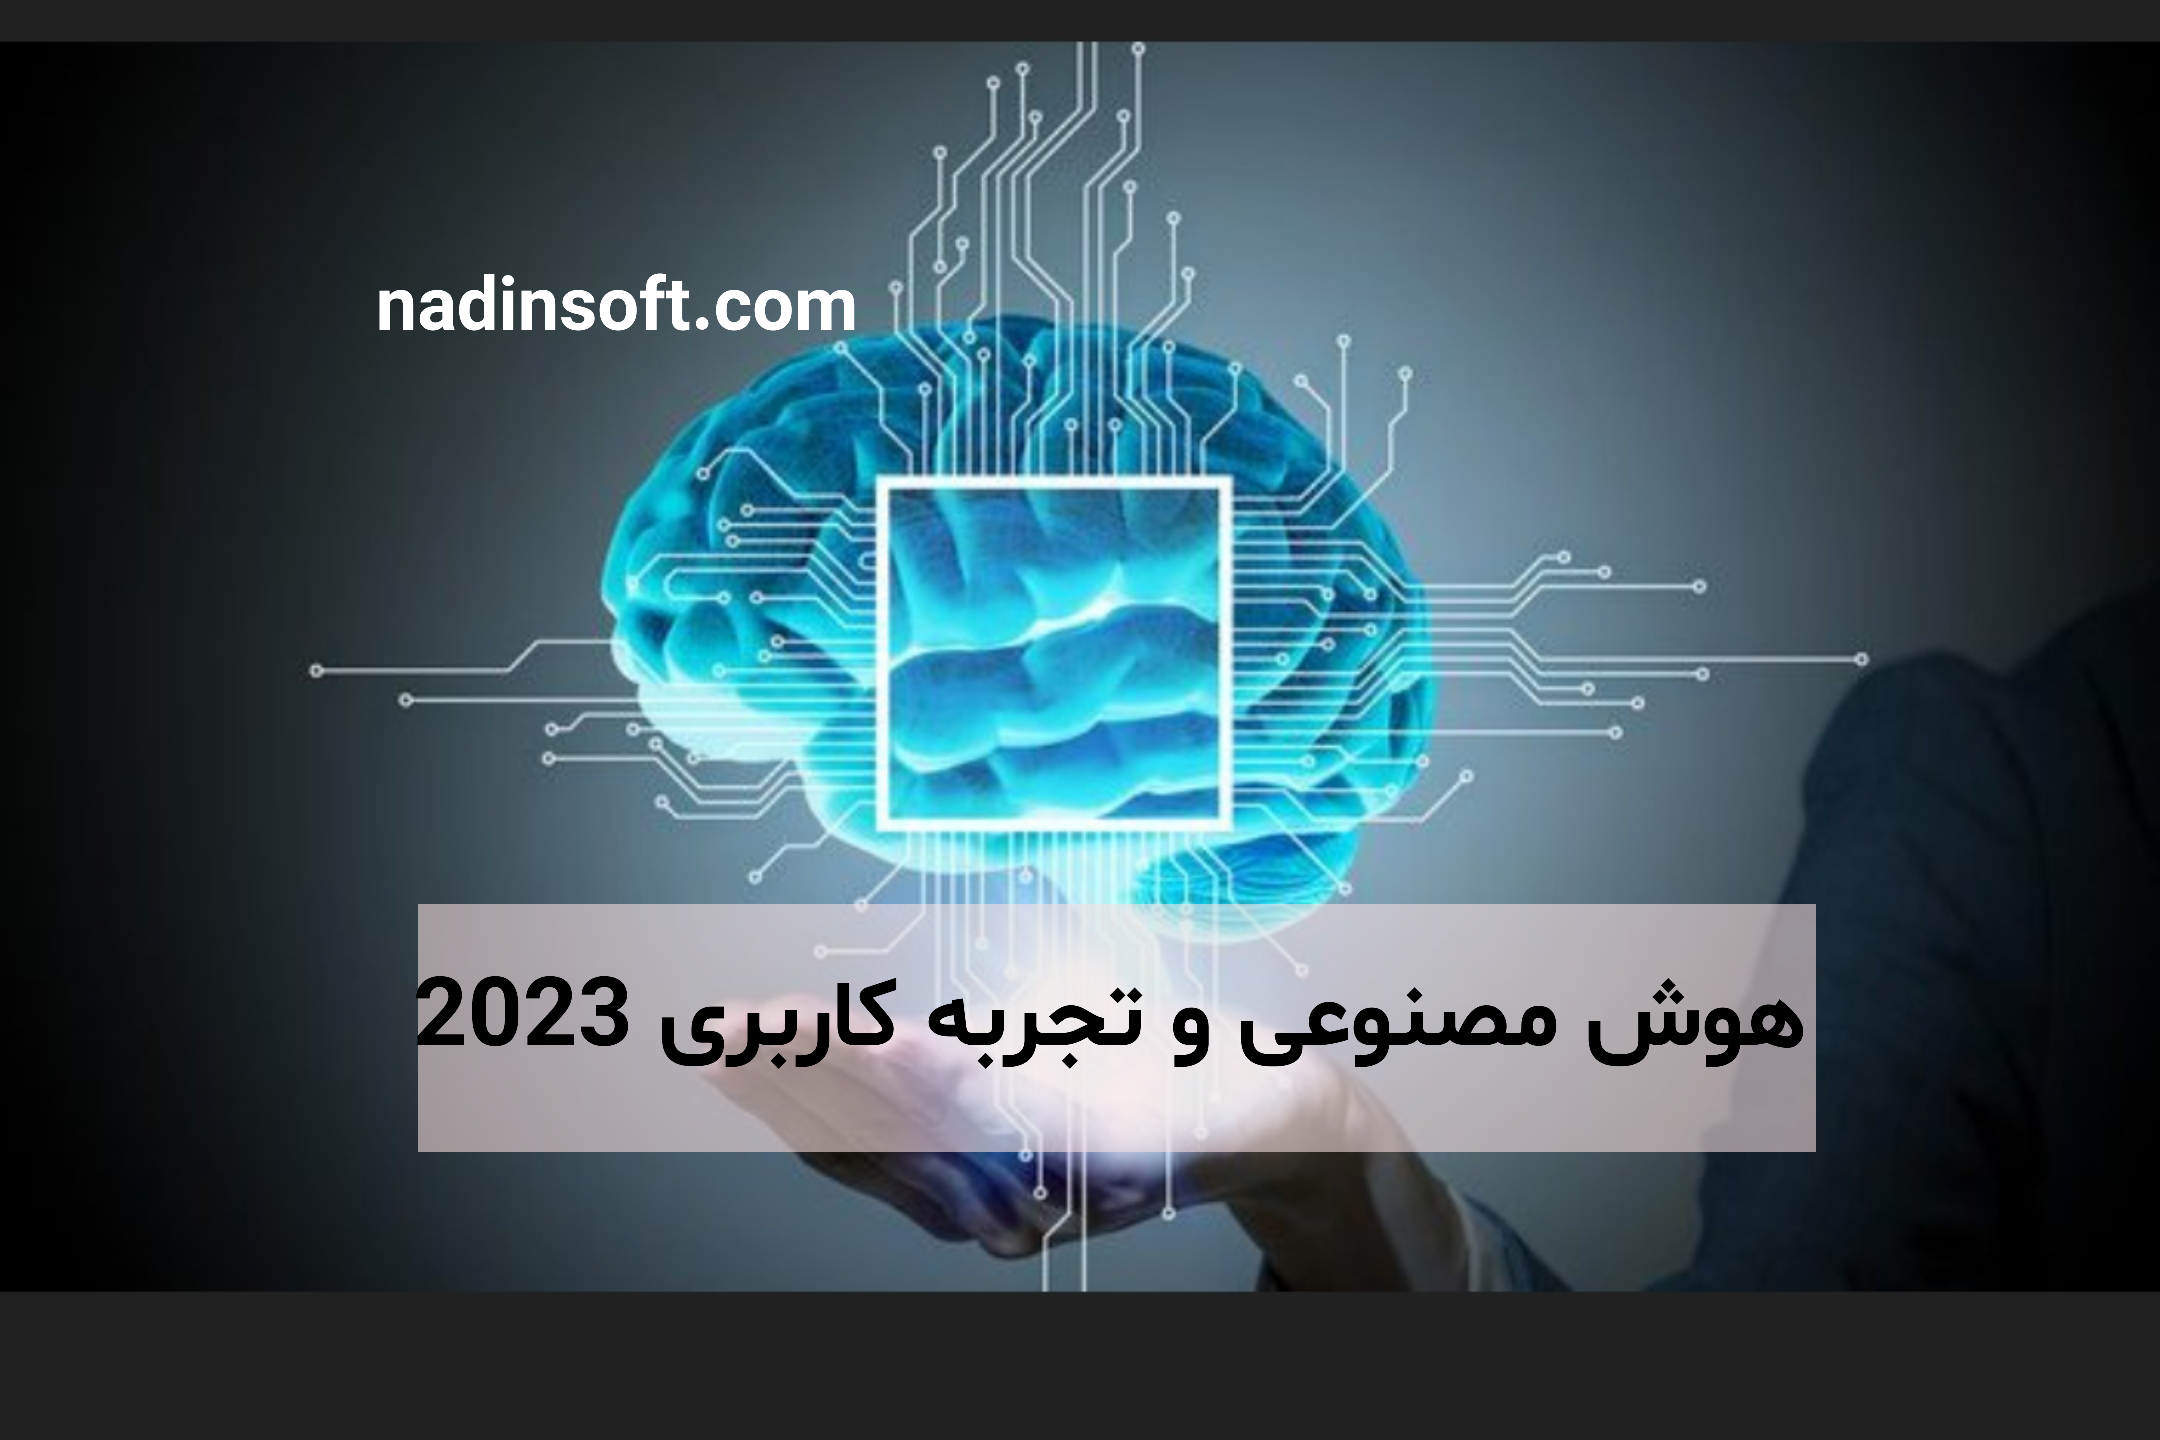 هوش مصنوعی و تجربه کاربری 2023